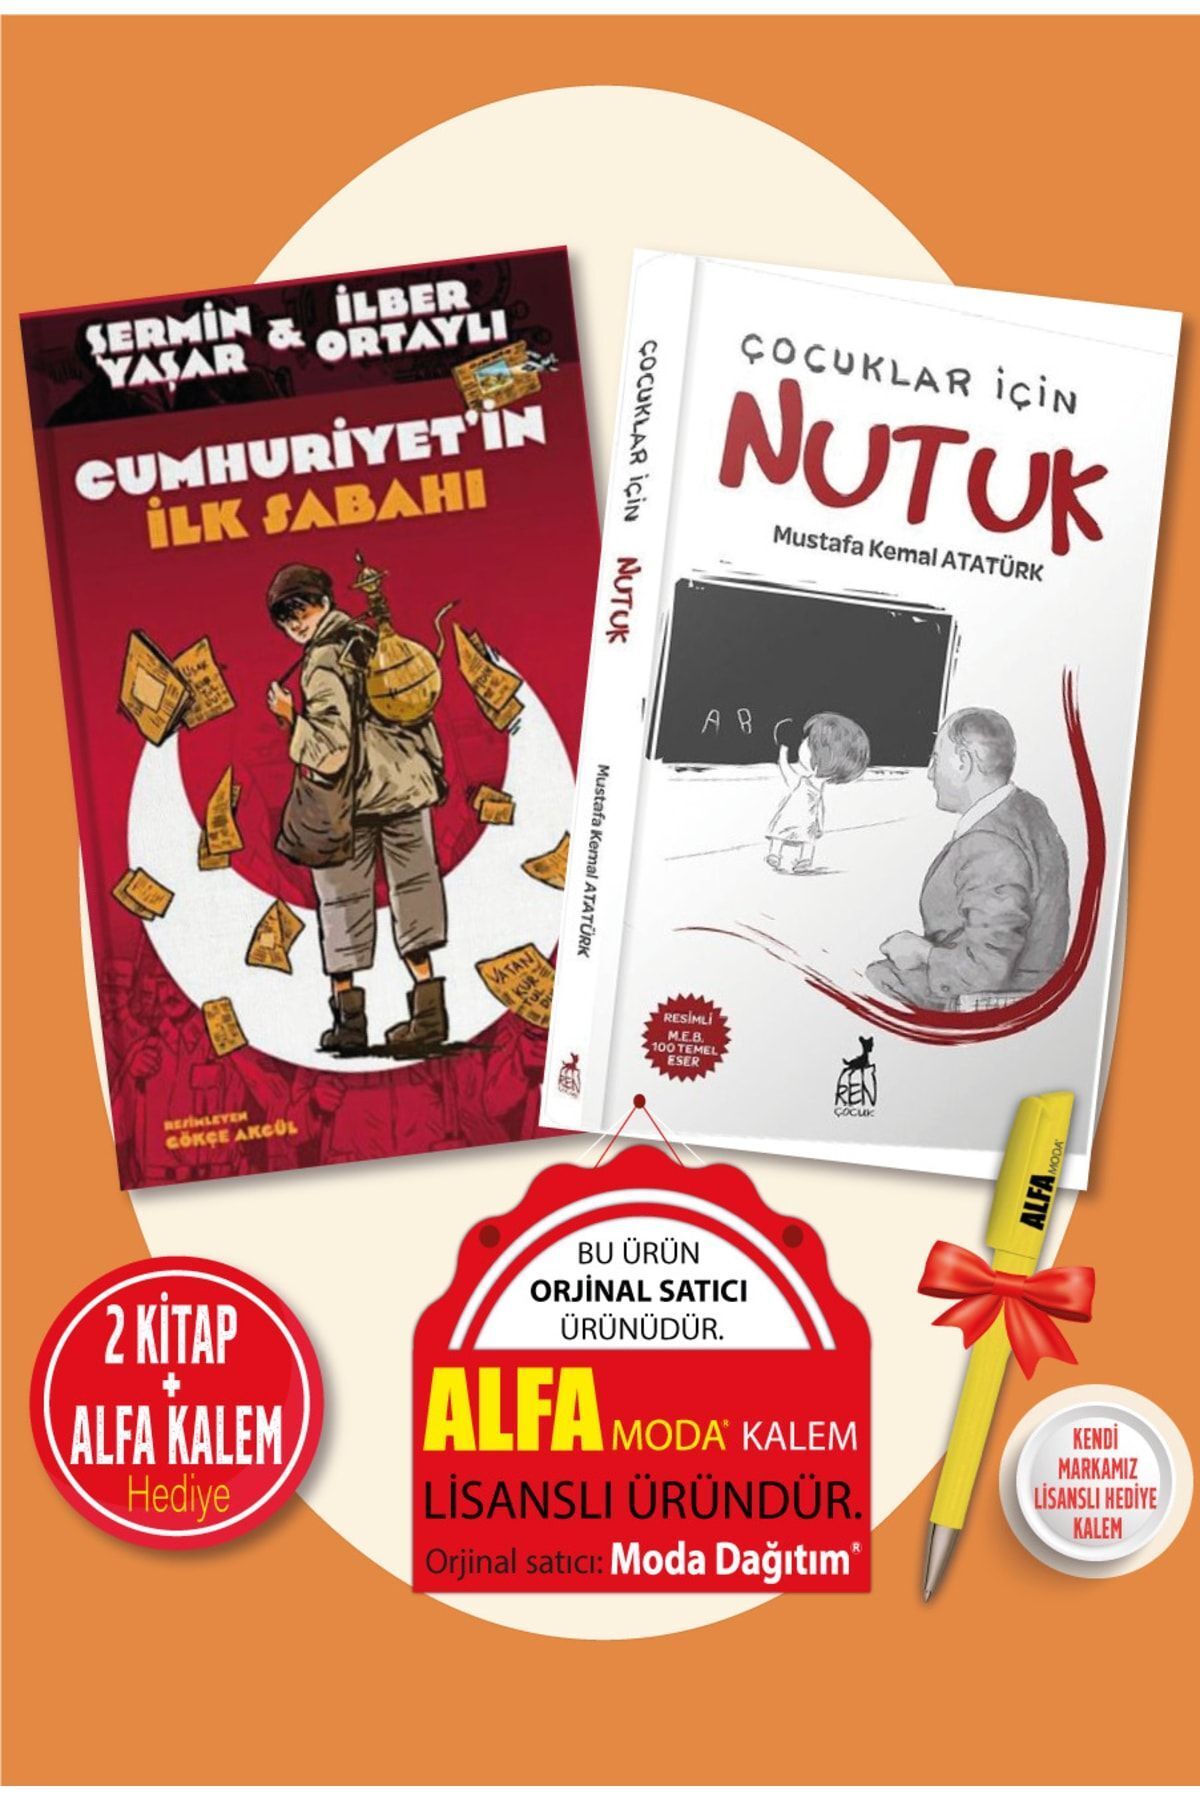 Kronik Kitap Cumhuriyet’in Ilk Sabahı (şermin Yaşar & Ilber Ortaylı) + Çocuklar Için Nutuk - 2 Kitap + Alfa Kalem